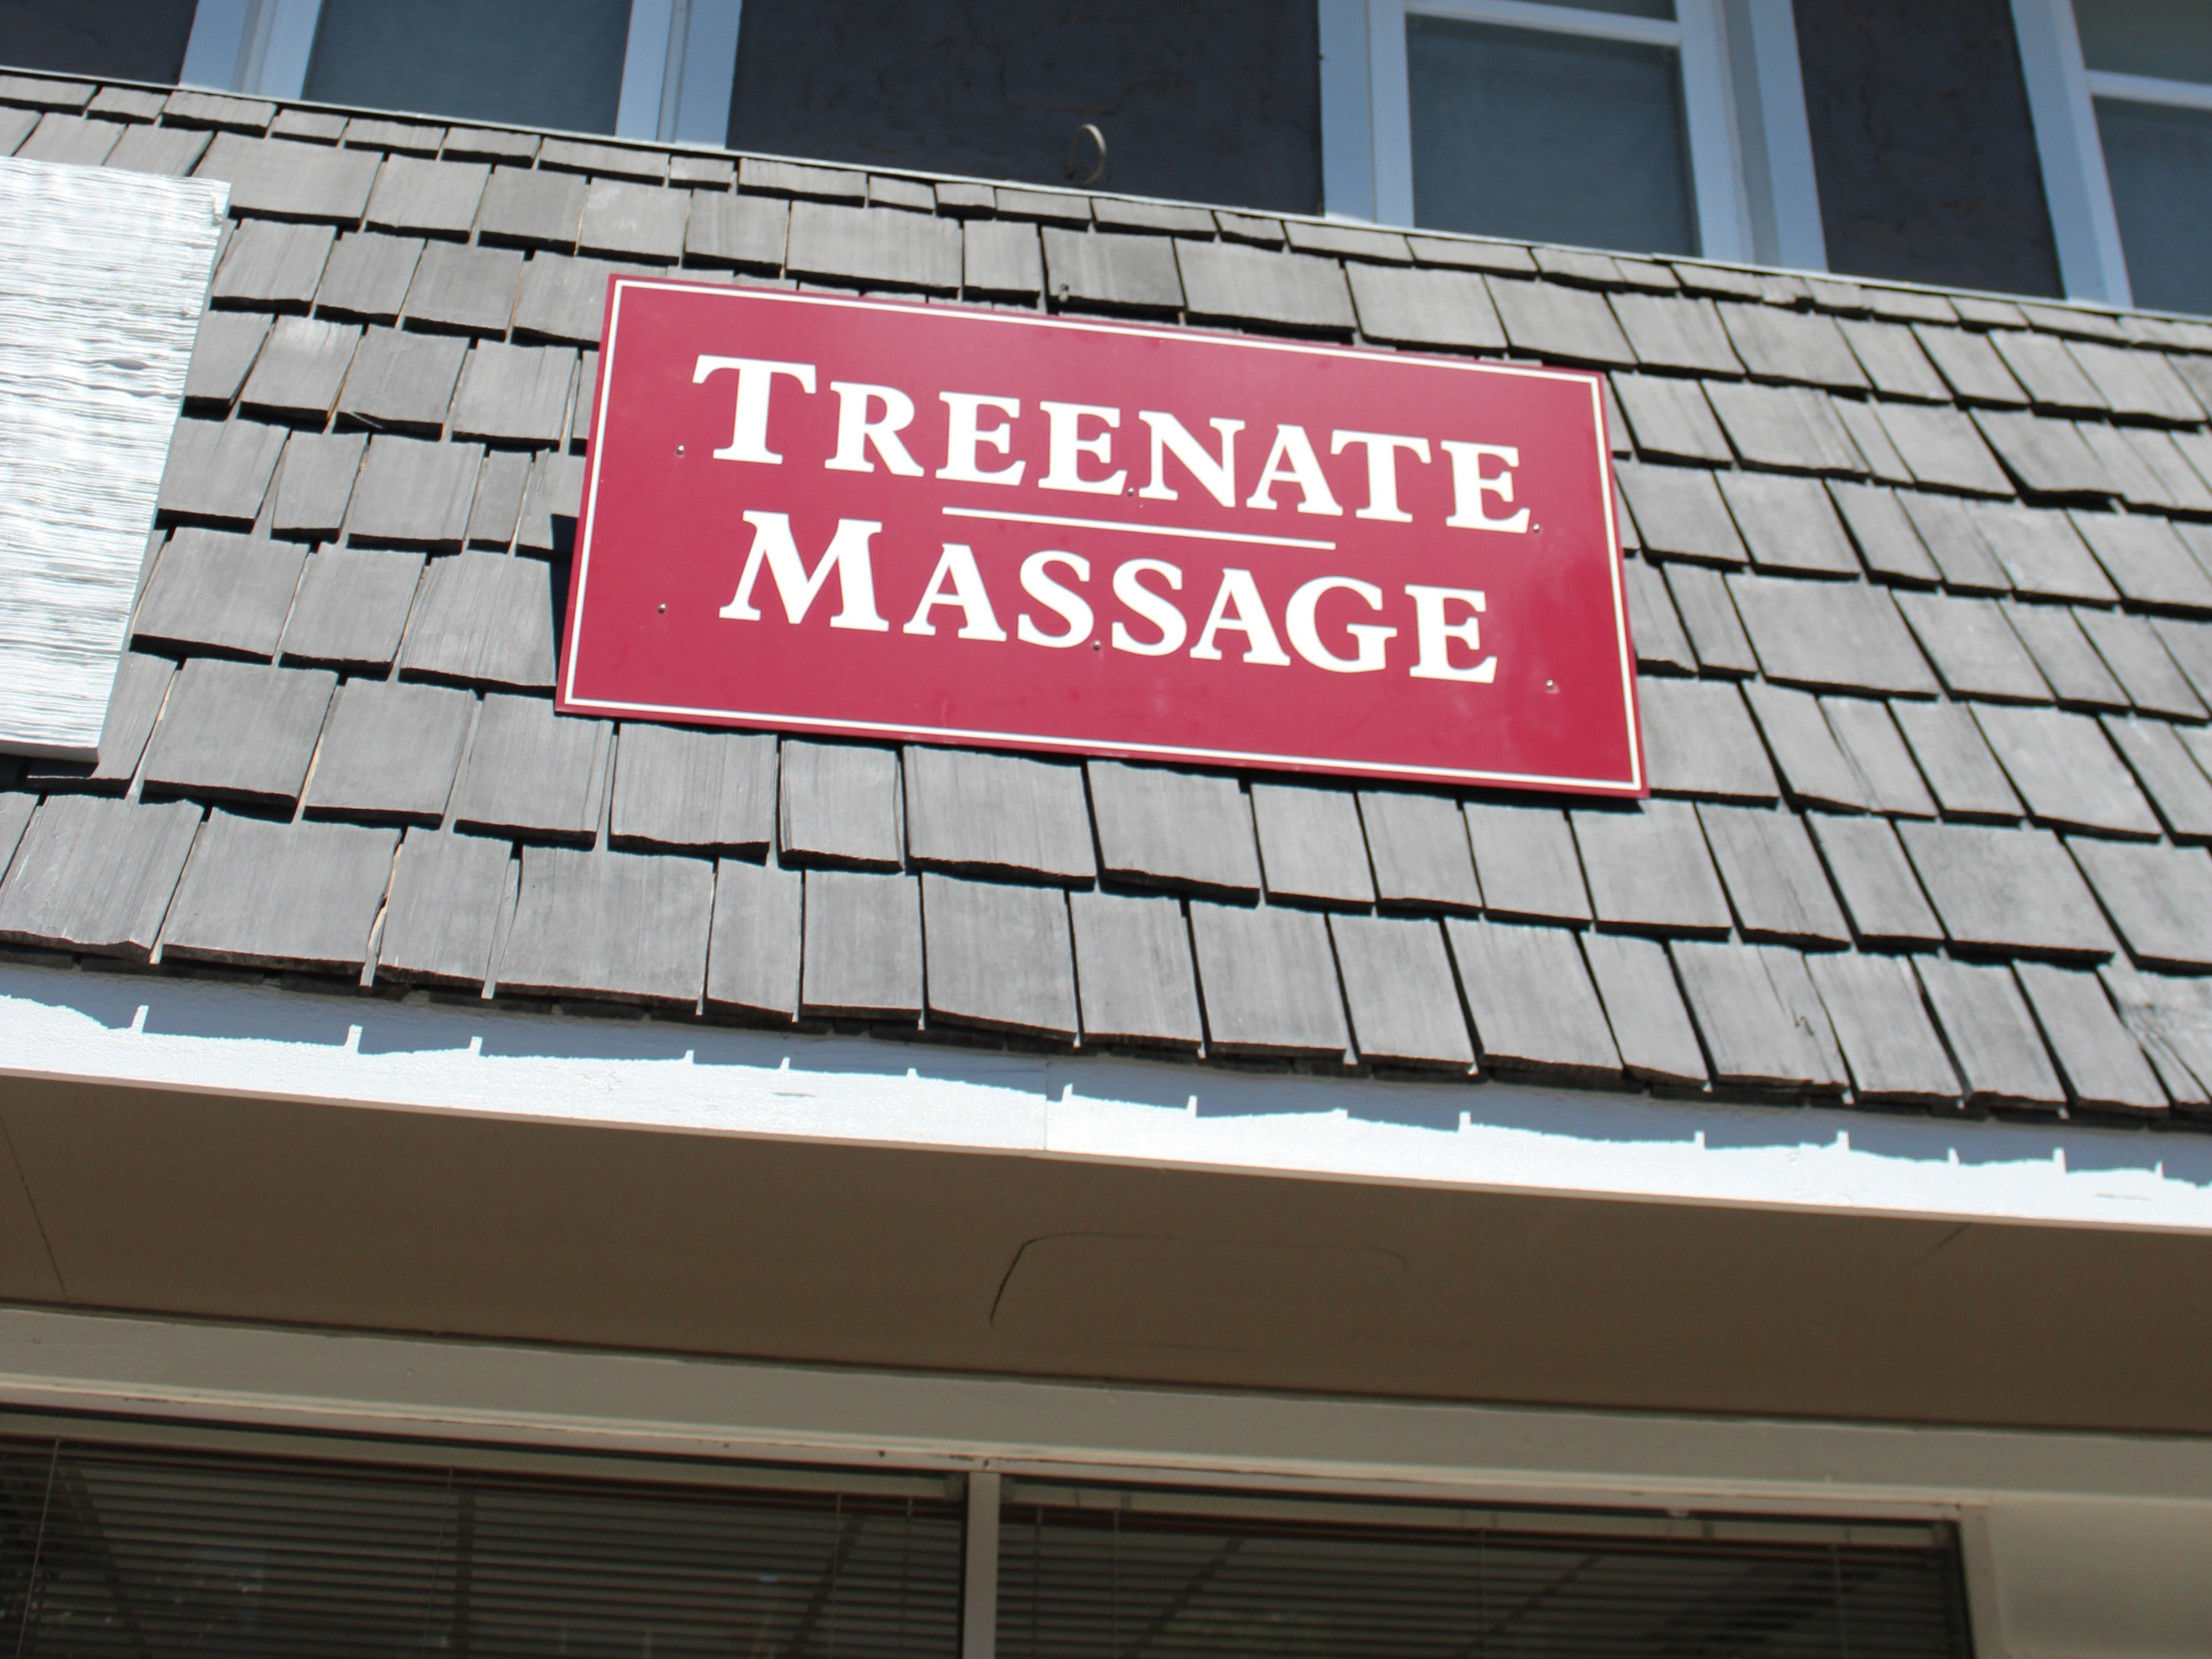 treenate-massage-downtown-petoskey